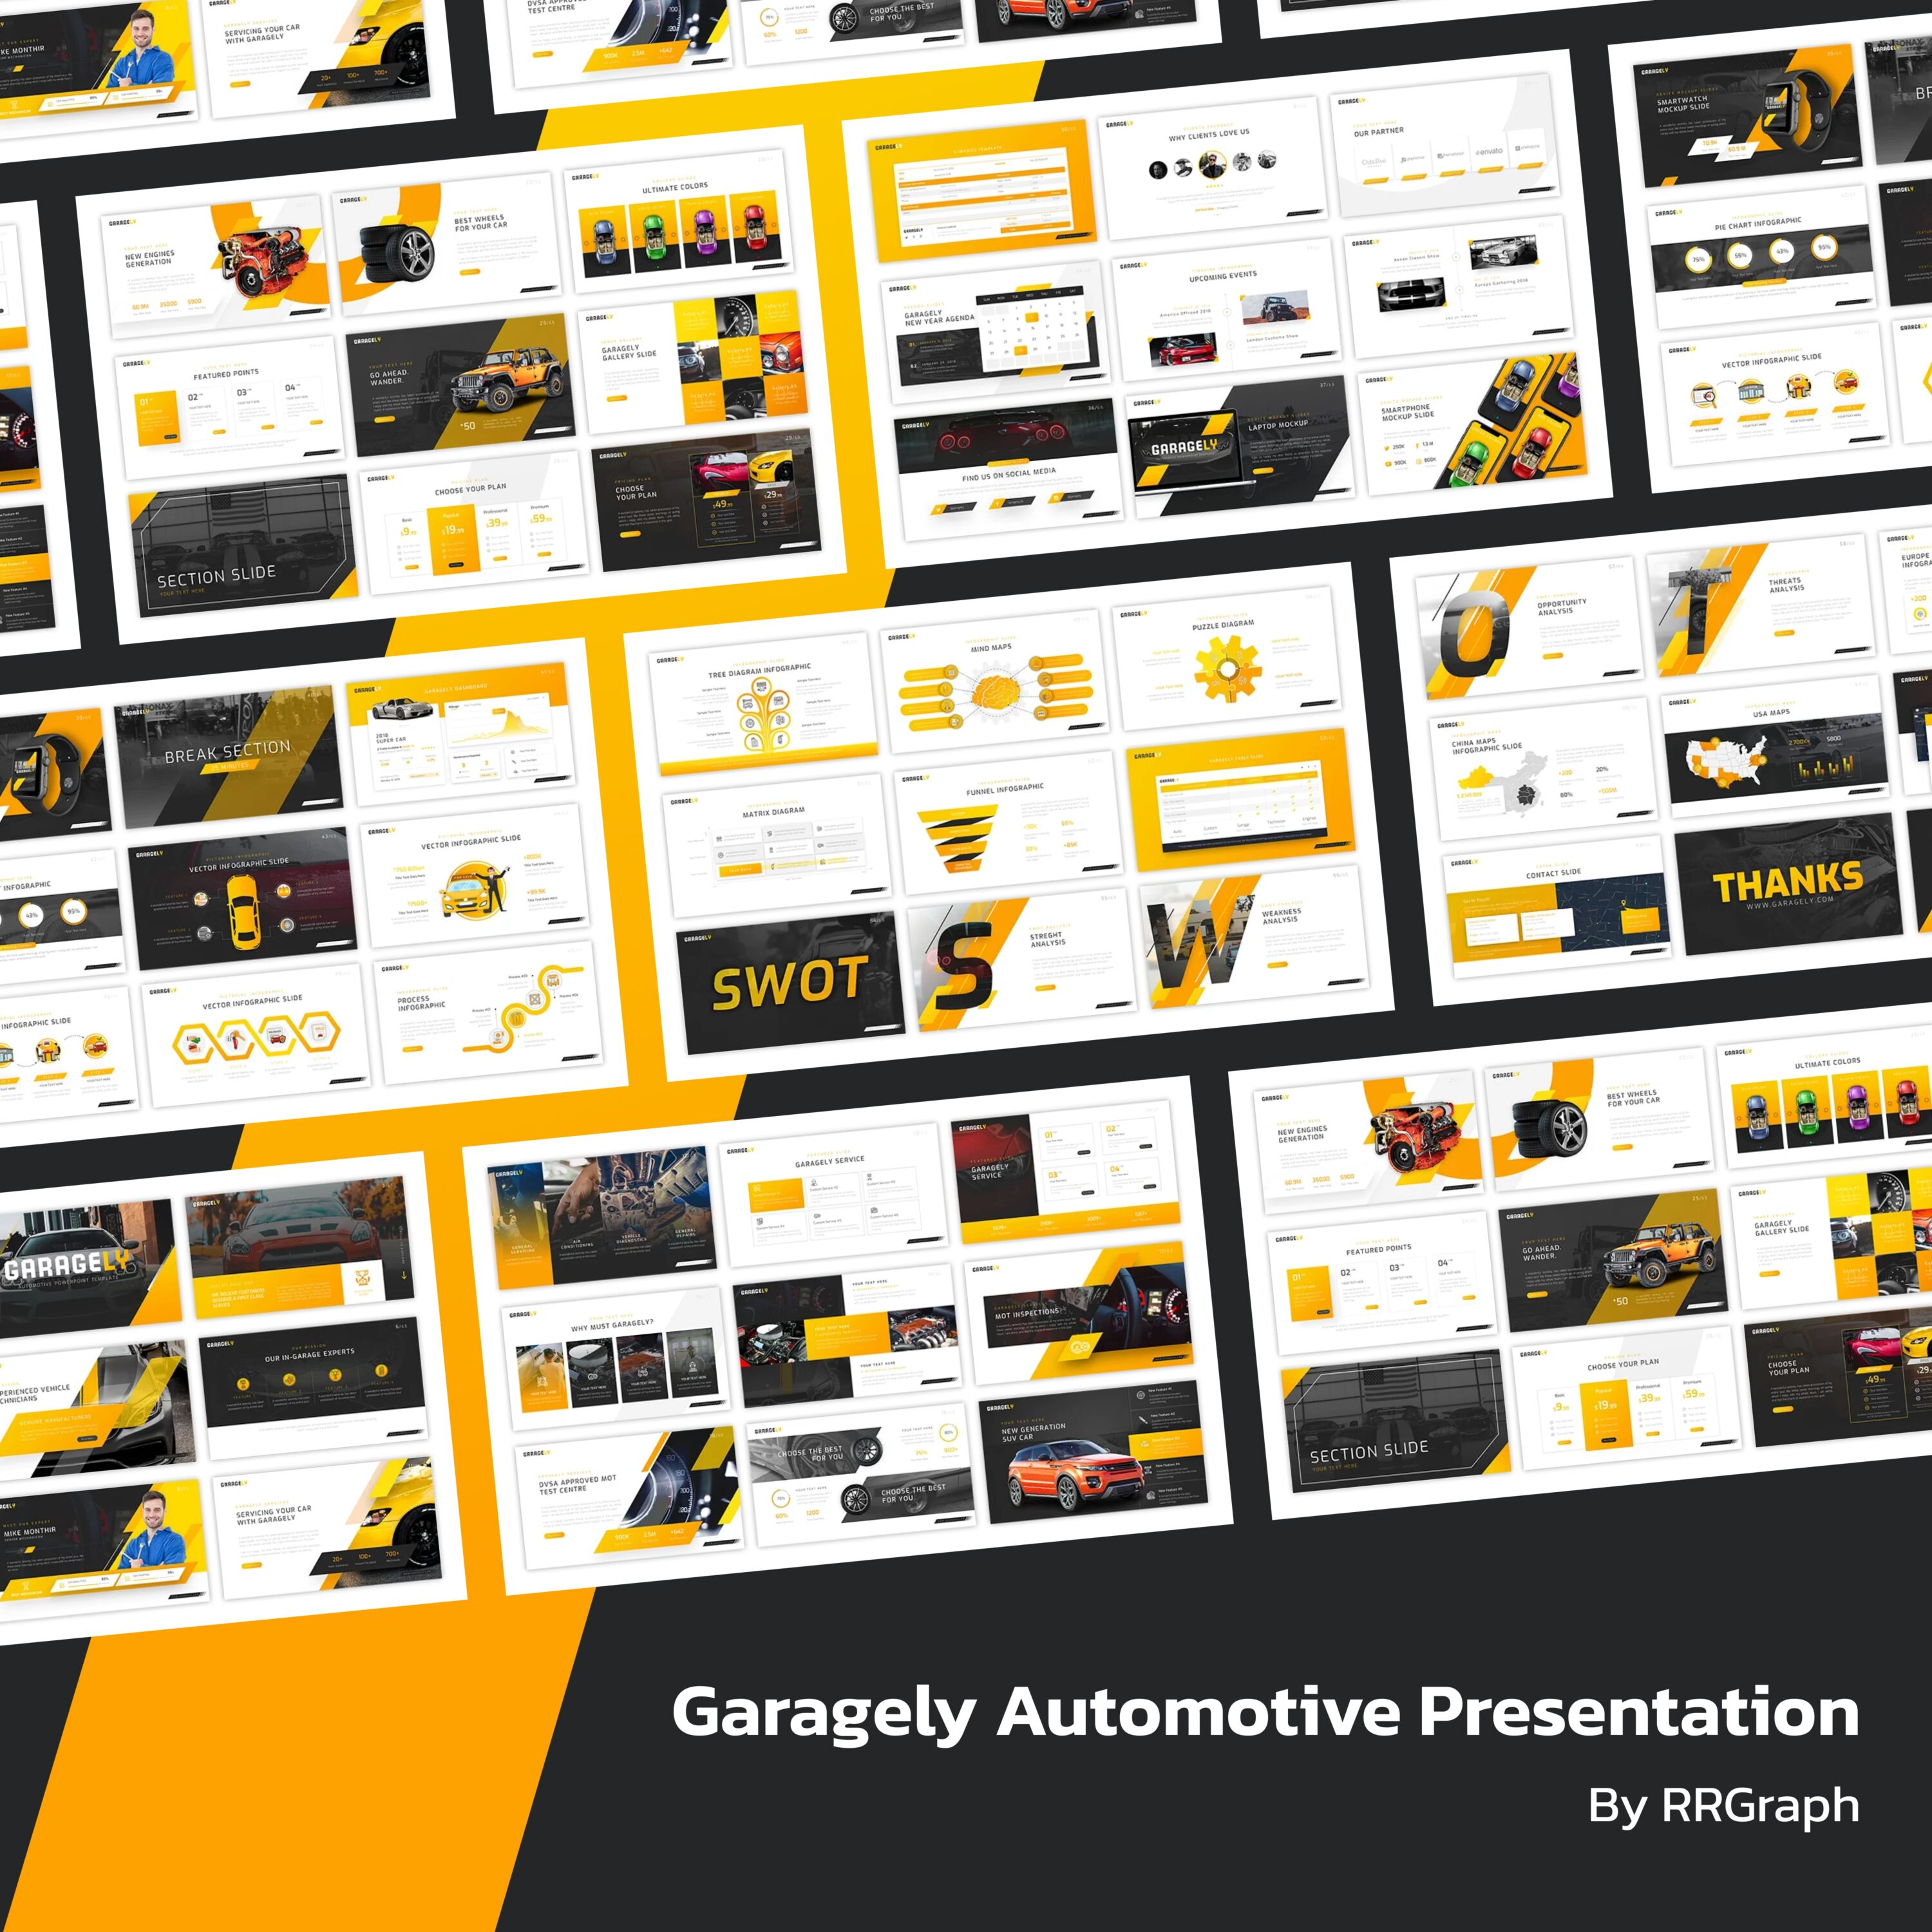 Garagely Automotive Presentation.